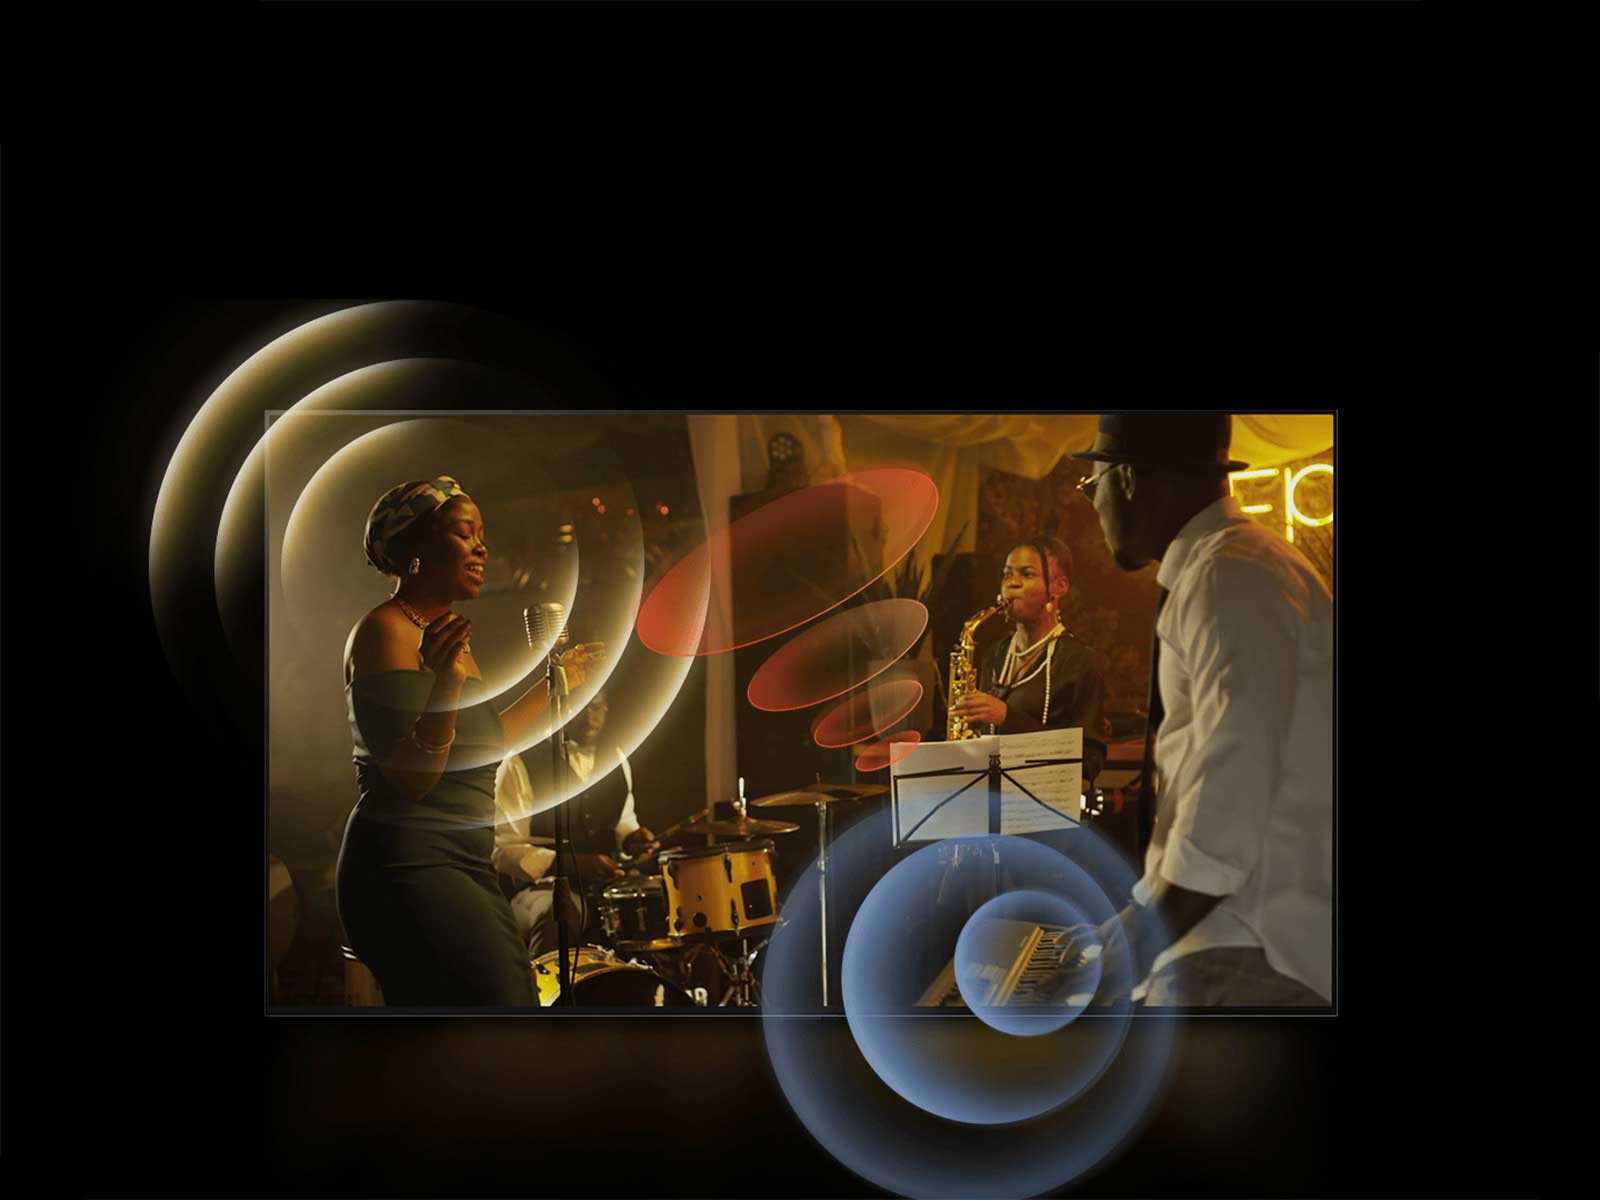 Ein LG OLED TV zeigt einen Musiker bei einem Auftritt, mit hellen Kreisgrafiken um die Mikrofone und Instrumente.